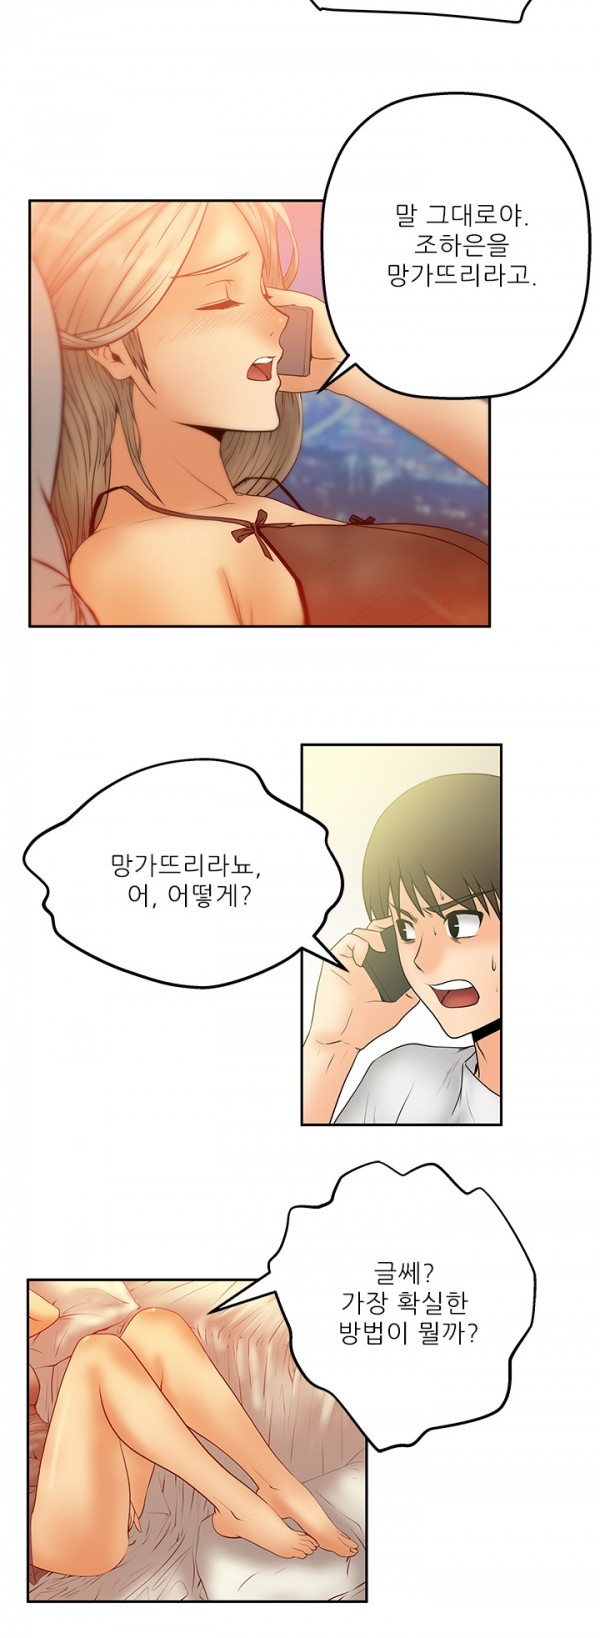 [Minu Mindu] Office Lady Vol. 1 [Korean] 64